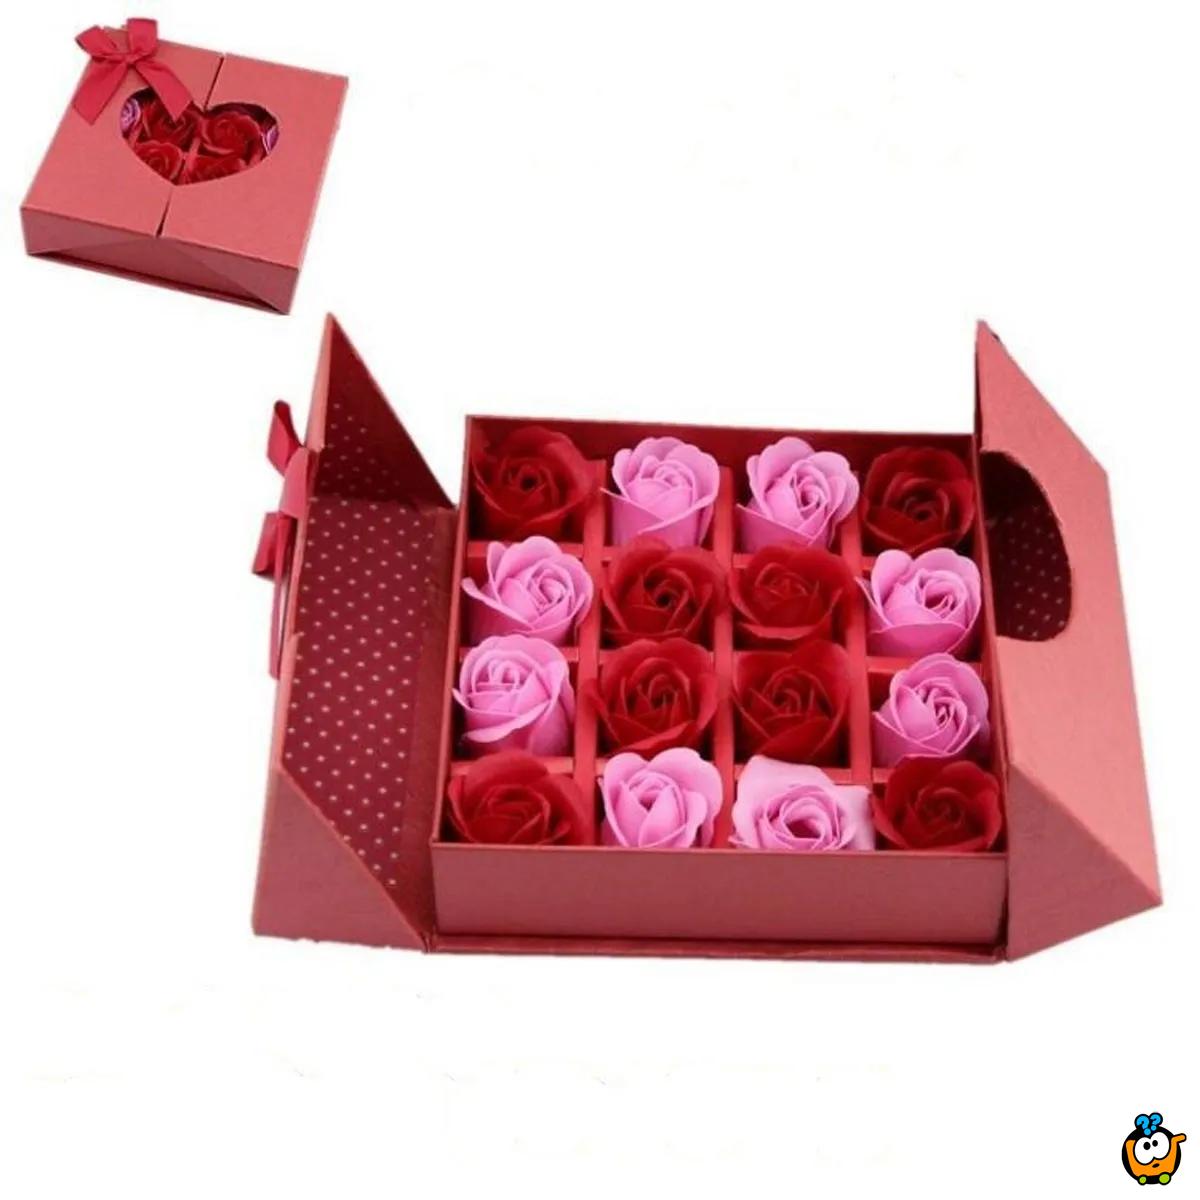 Poklon set ukrasnih sapuna  - Crvena ruža